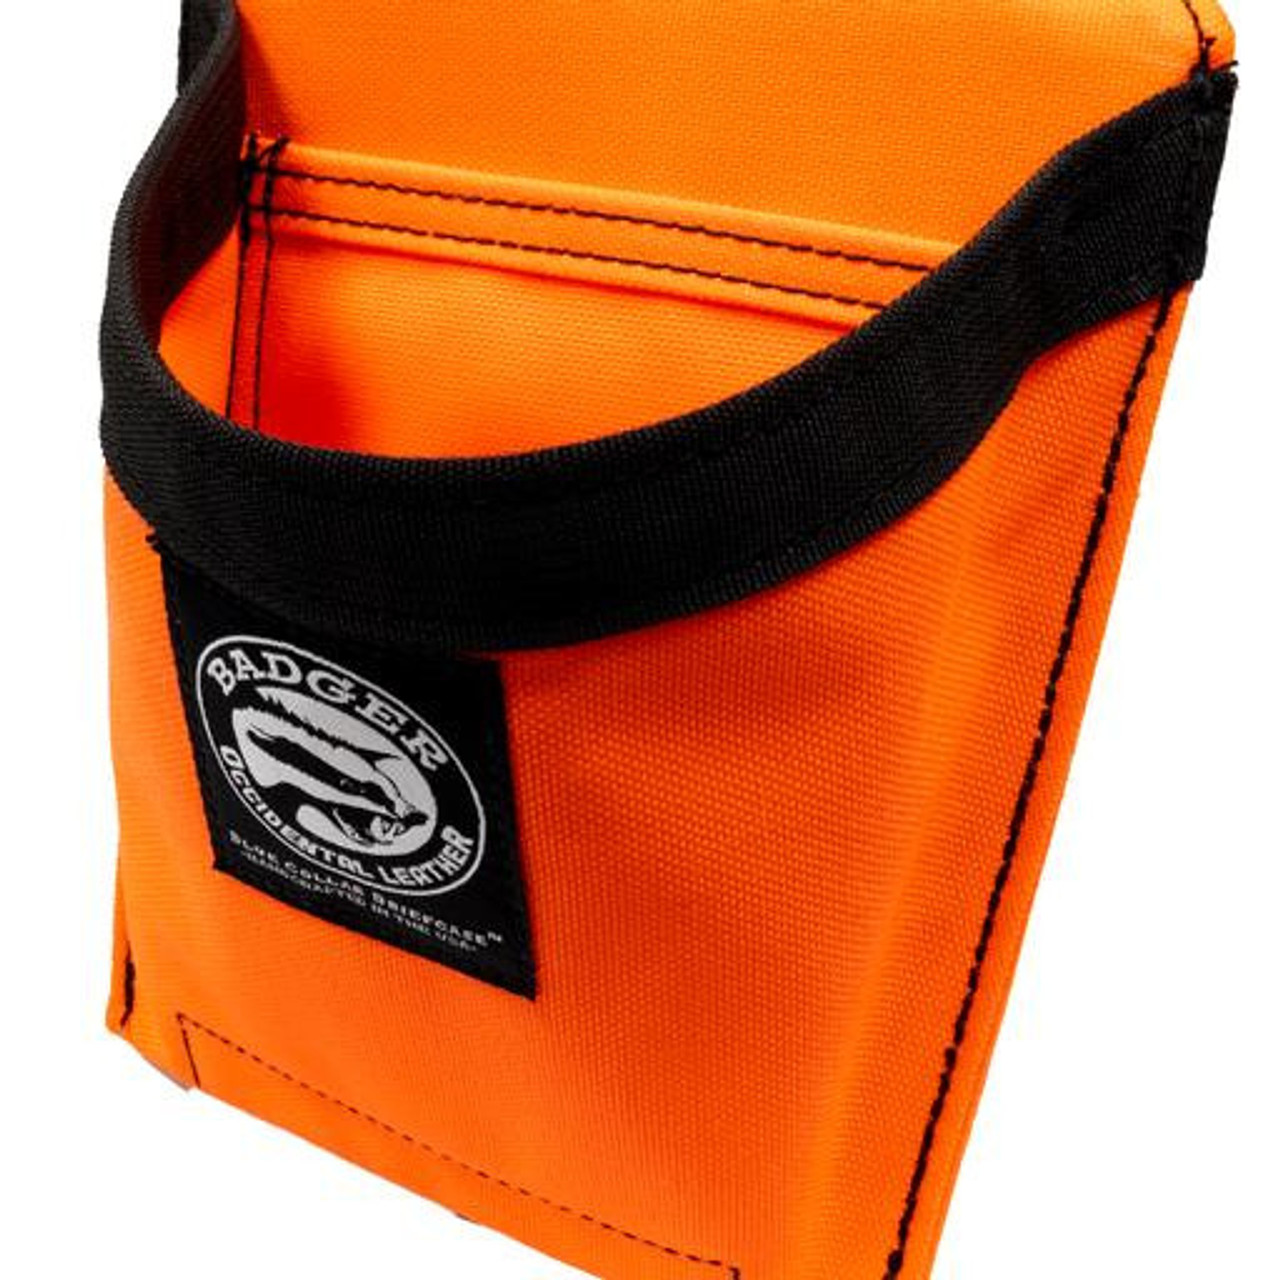 Badger Accessory Pouch Hi-Vis Orange